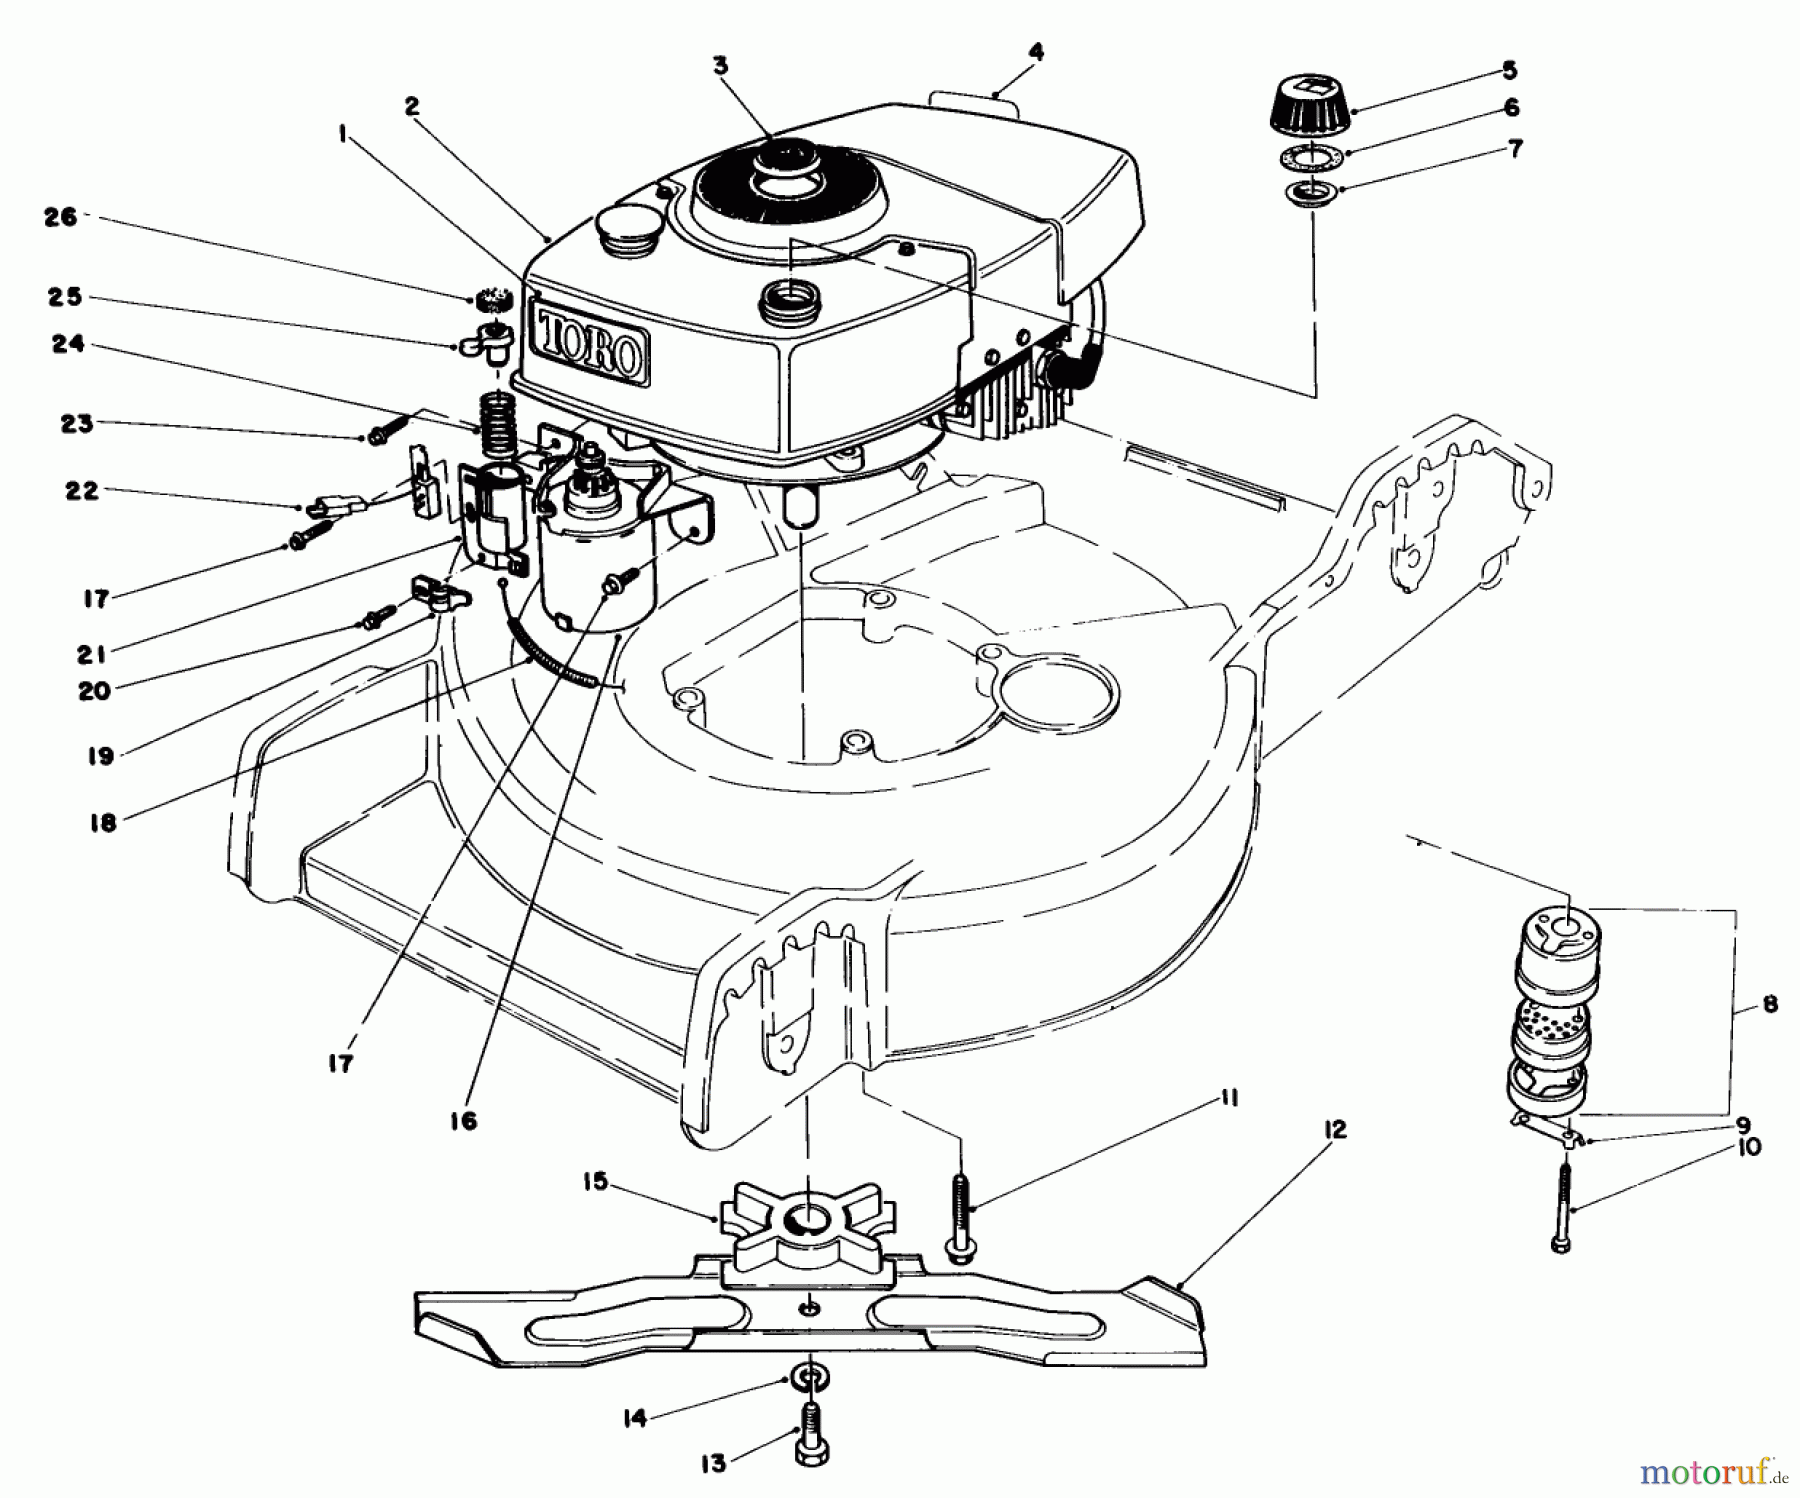  Toro Neu Mowers, Walk-Behind Seite 1 20574 - Toro Lawnmower, 1986 (6000001-6999999) ENGINE ASSEMBLY